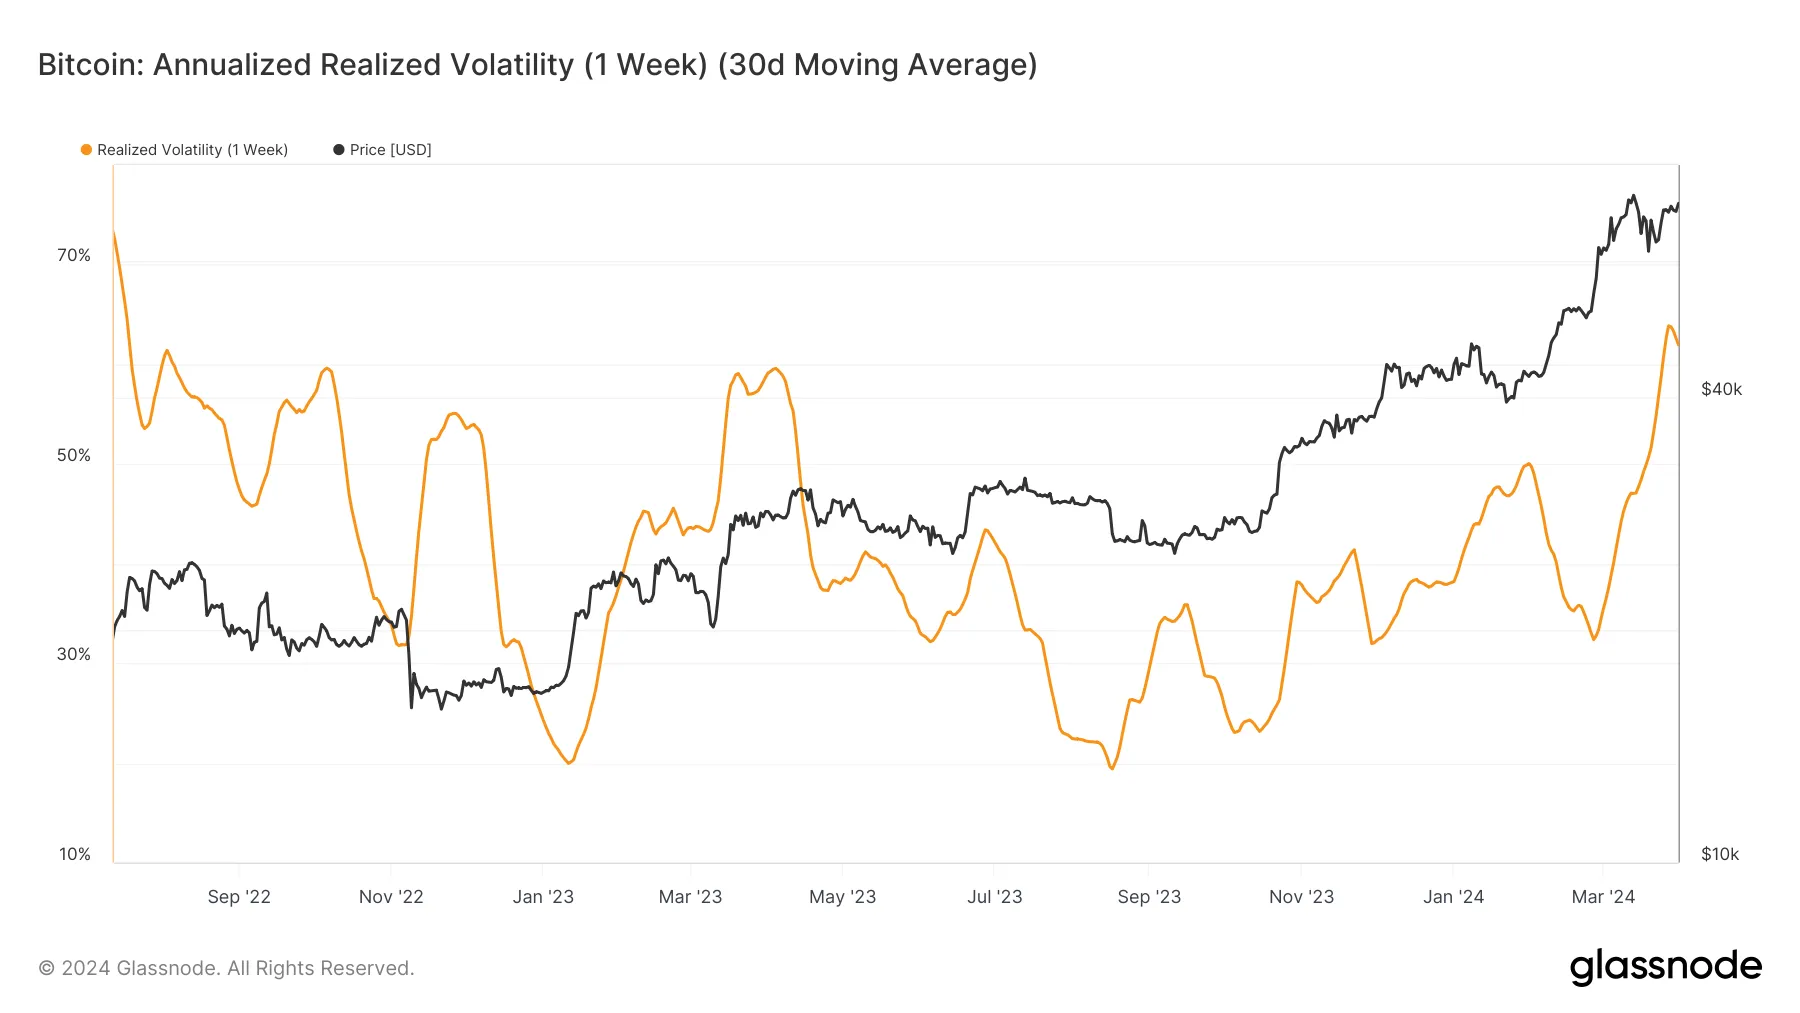 Volatilité réalisée annualisée du Bitcoin (1 semaine, moyenne mobile sur 30 jours). Source : Glassnode